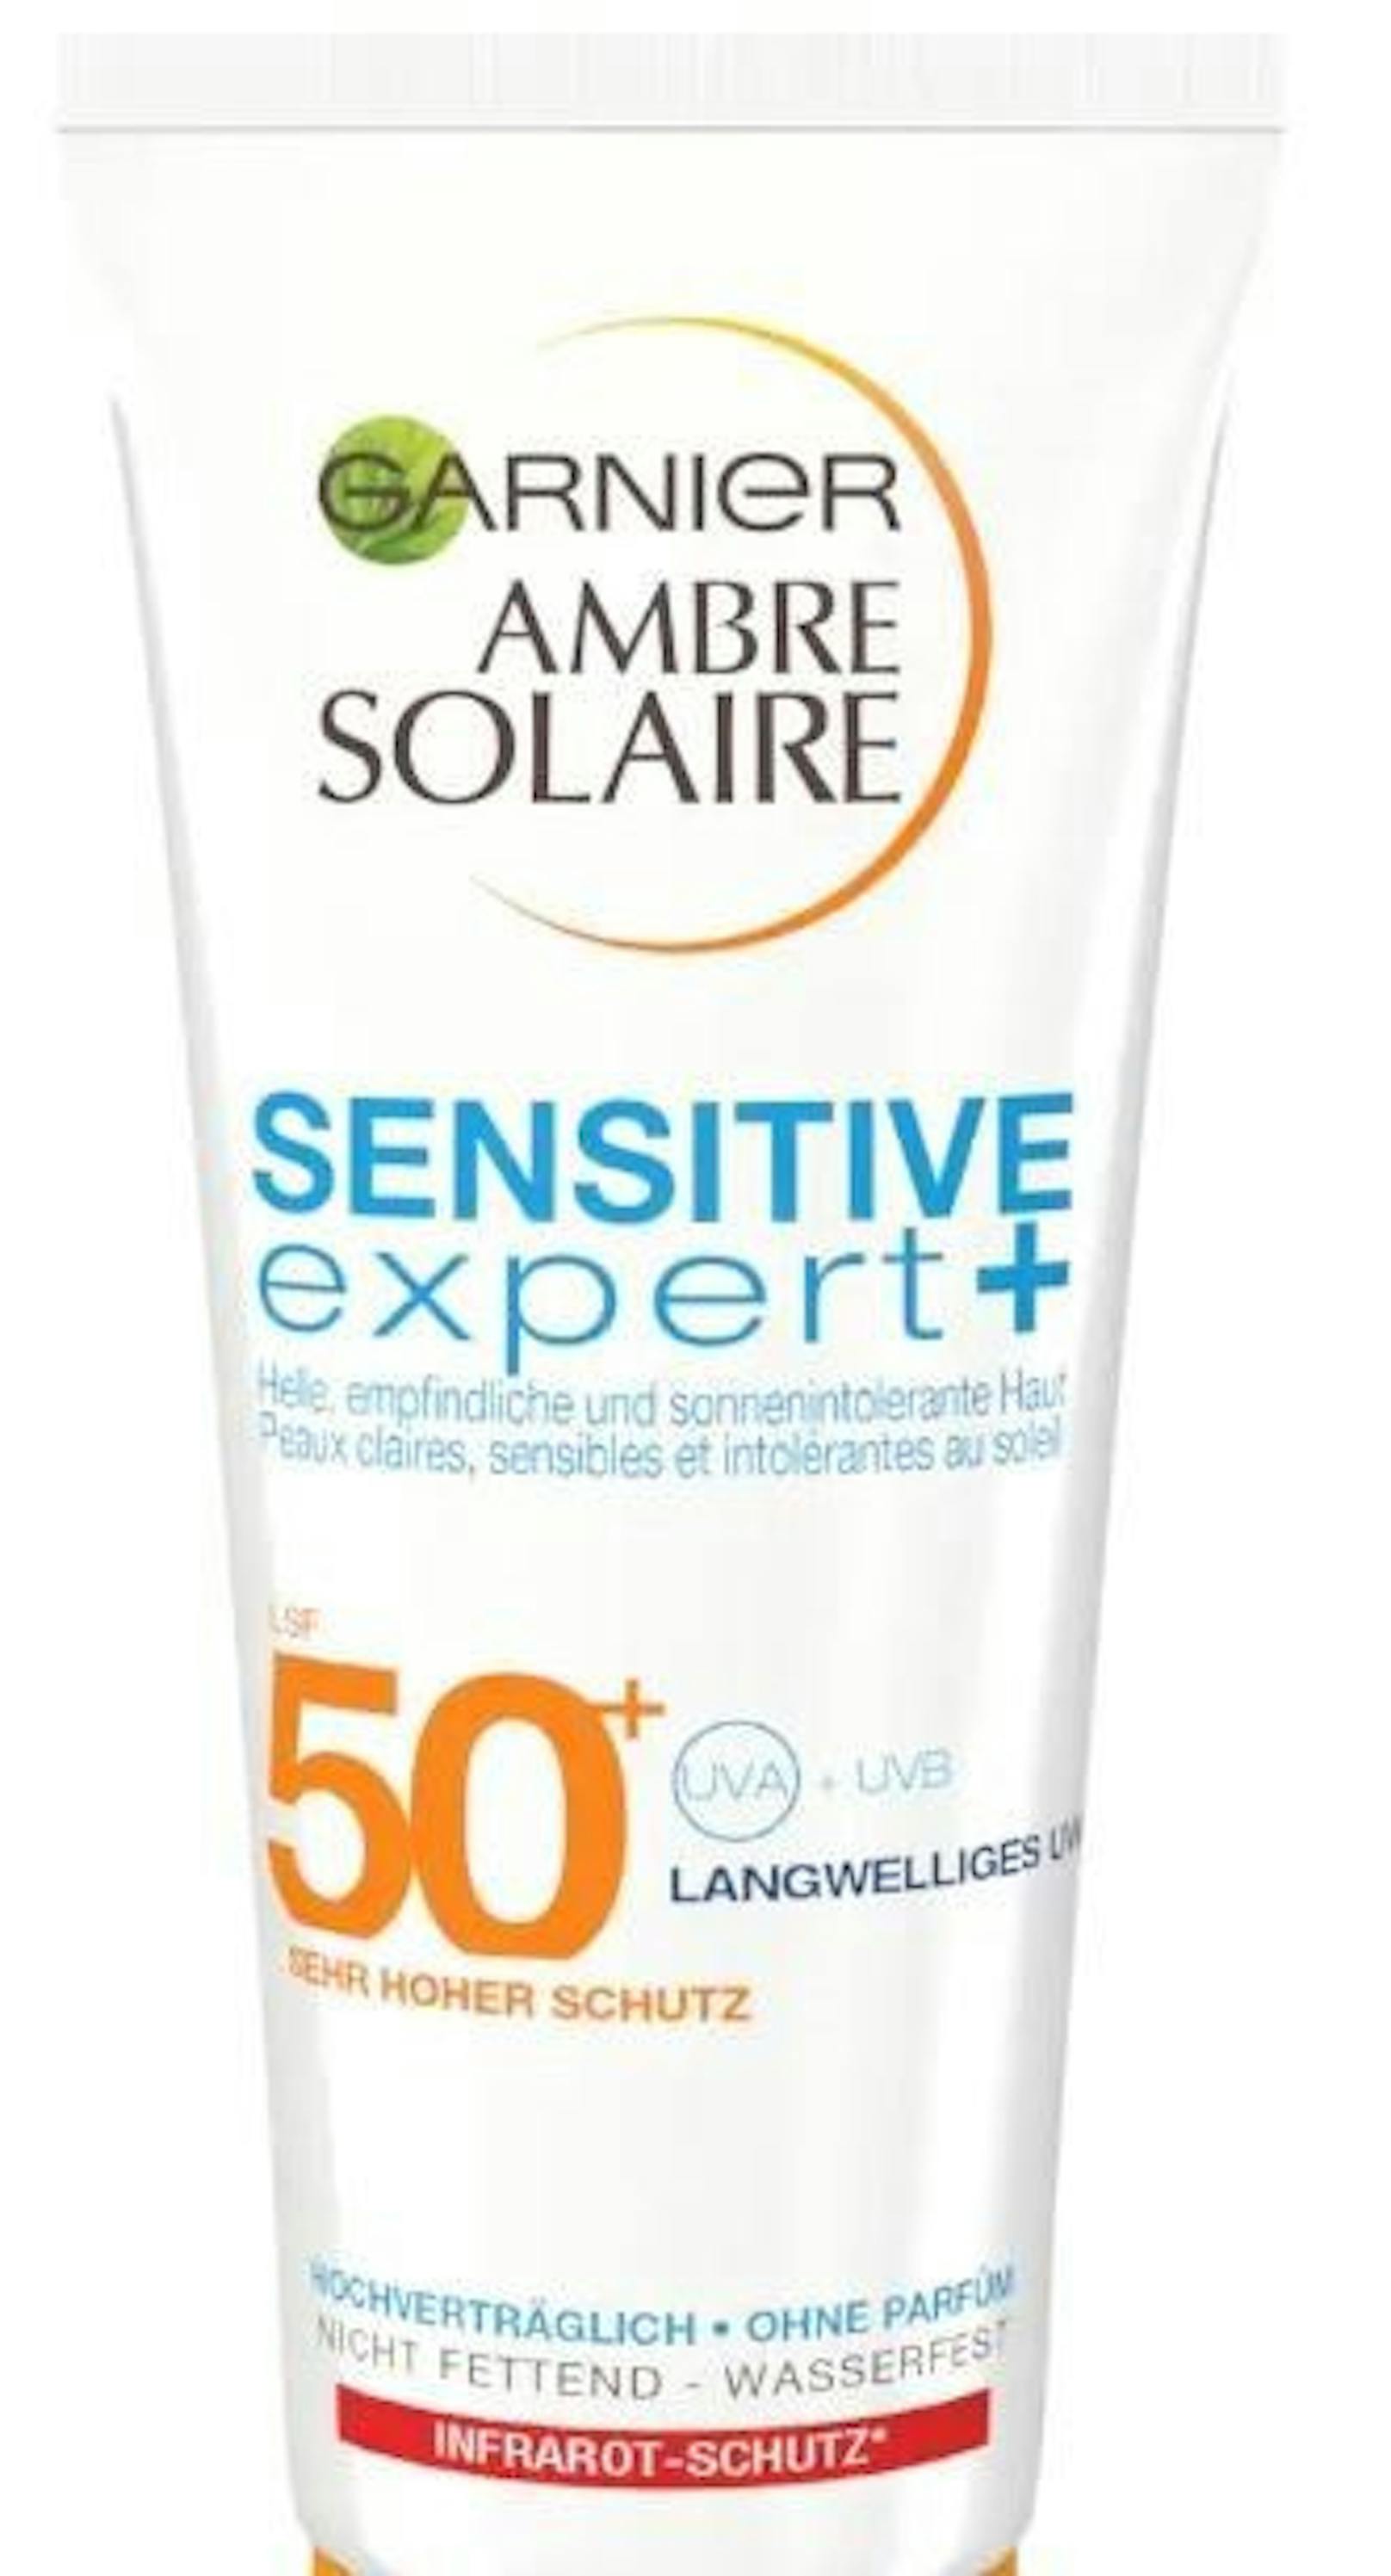 Garnier Ambre Solaire Sensitiv Expert+. 200ml um 9,99 Euro.